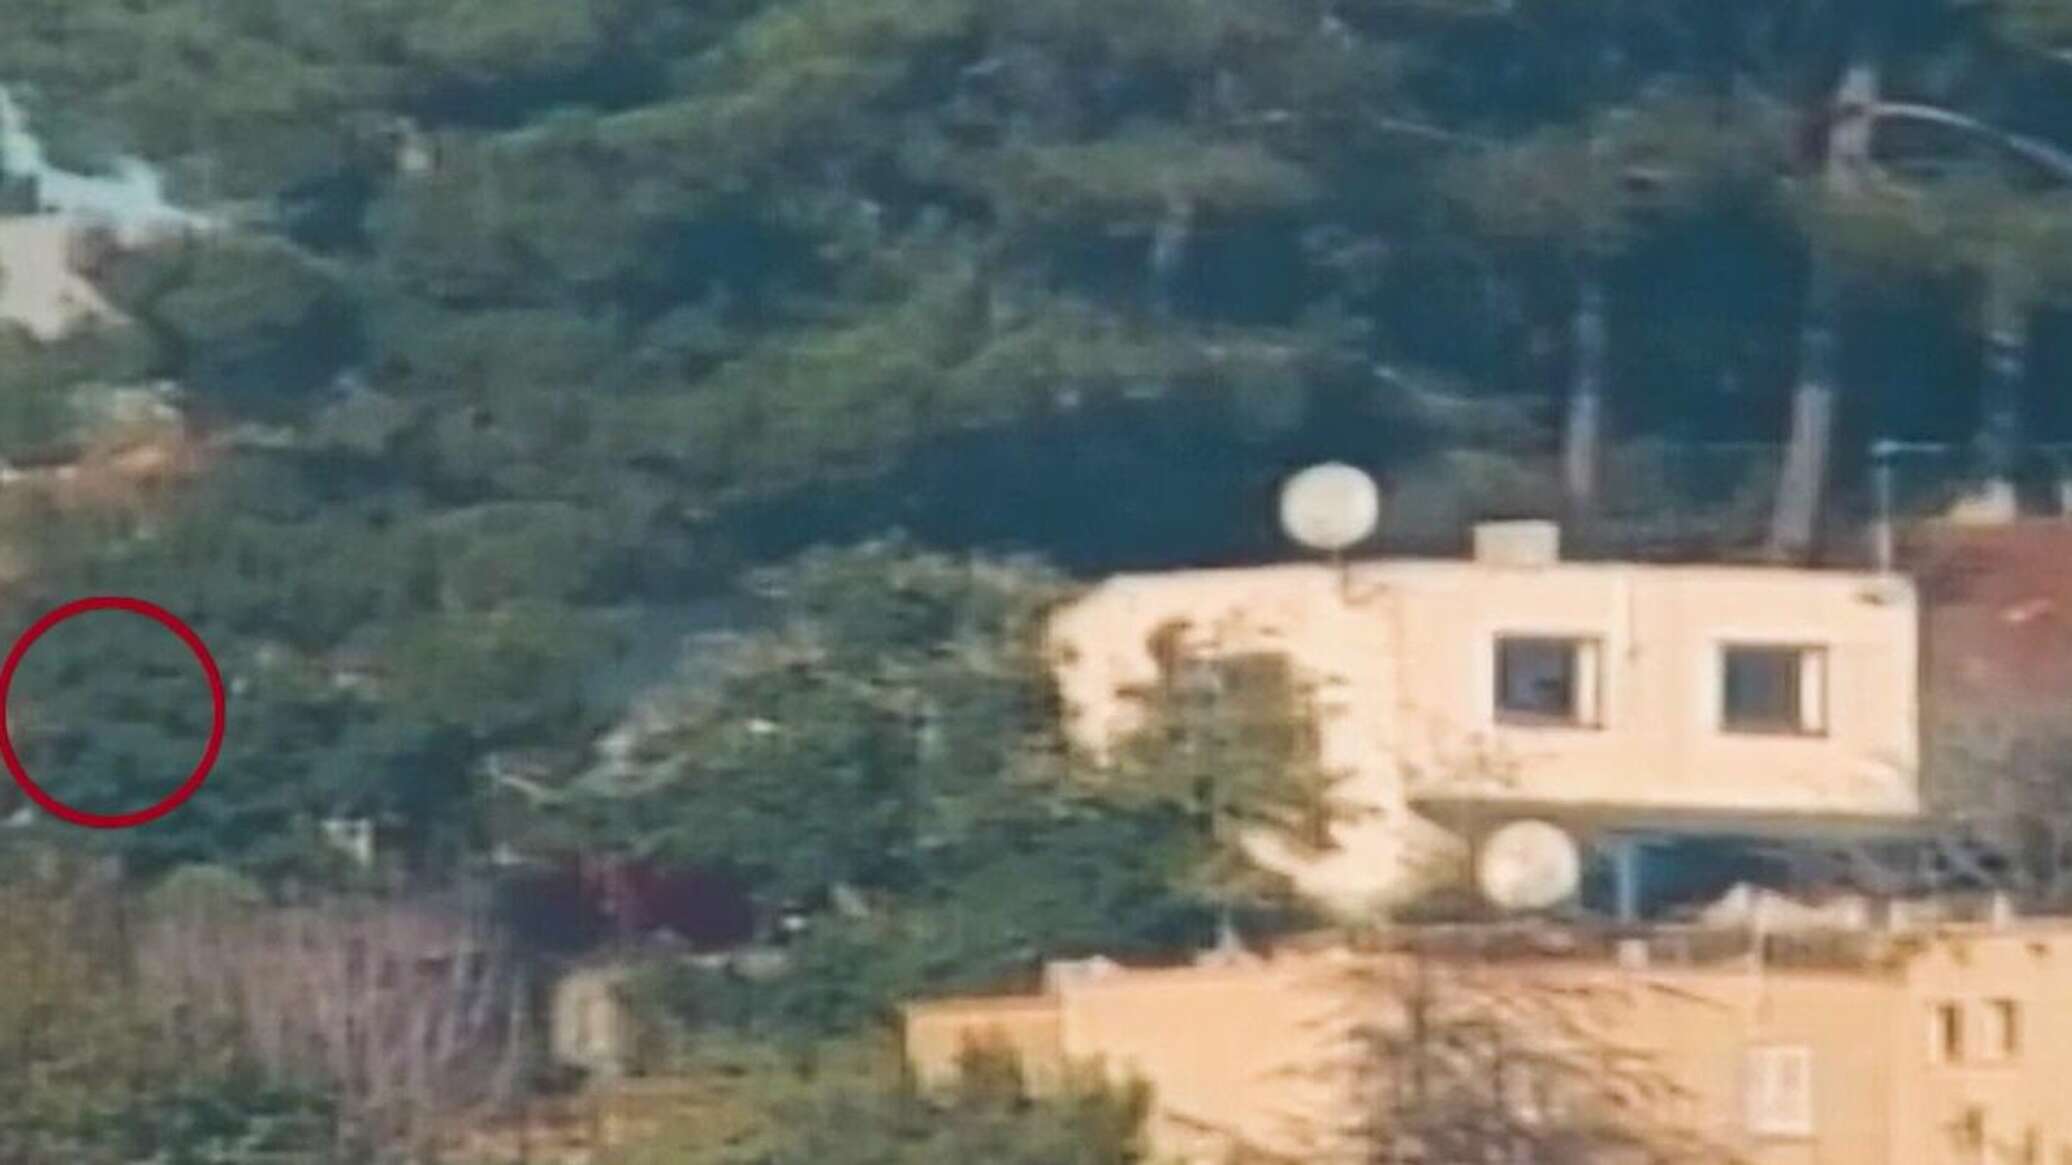 صاروخ من "حزب الله" يتسبب بسقوط سقف مقر إسرائيلي وانفجاره بمن فيه... فيديو